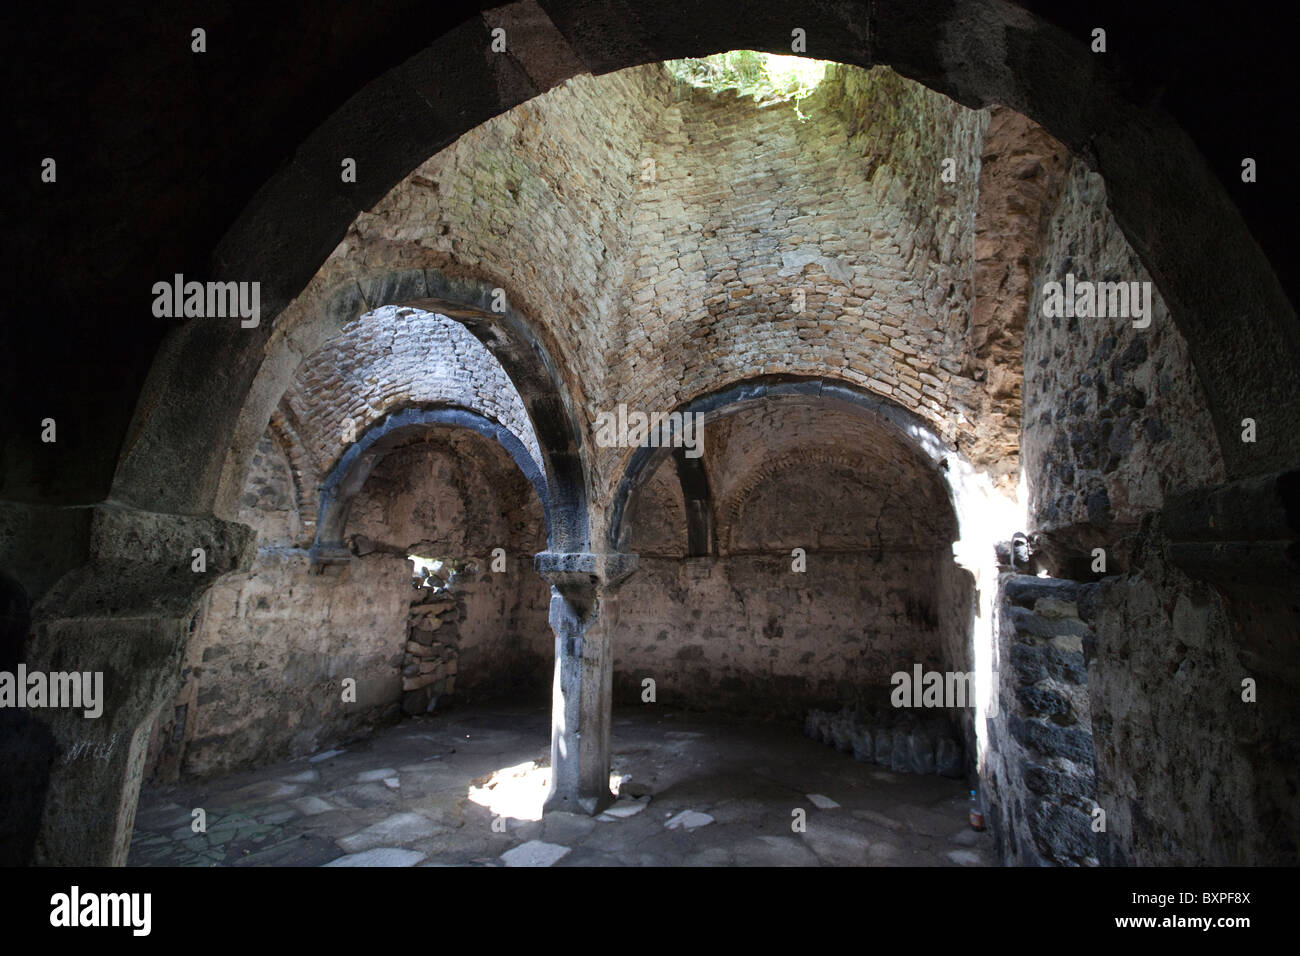 Inside the Armenian Church in the Fortress of Lori Berd in Northern Armenia Stock Photo